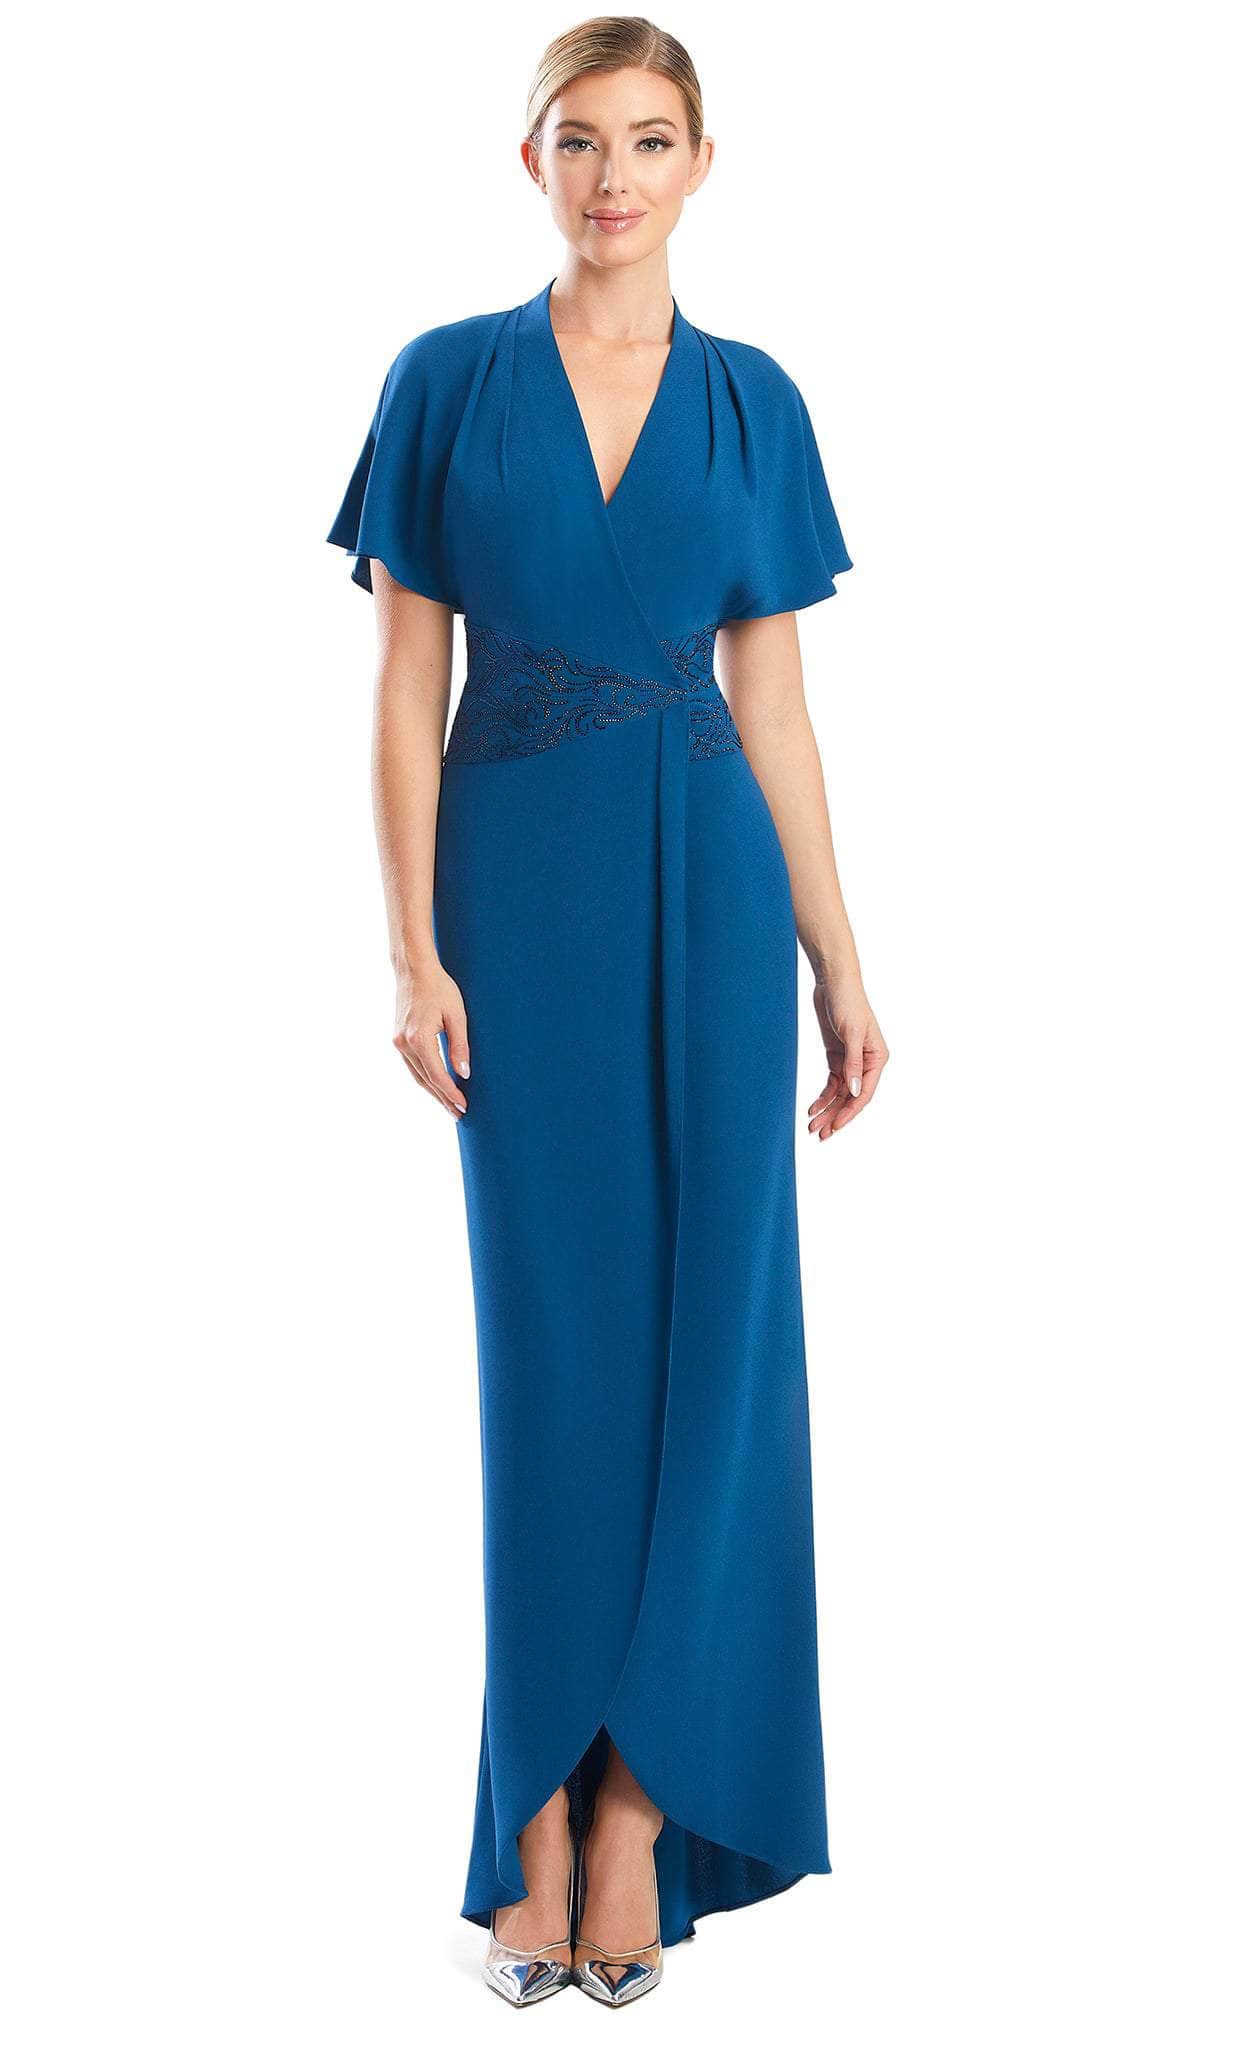 Alexander by Daymor 1760S23 - Flutter Sleeves Formal Dress Evening Dresses 00 / Teal Blue